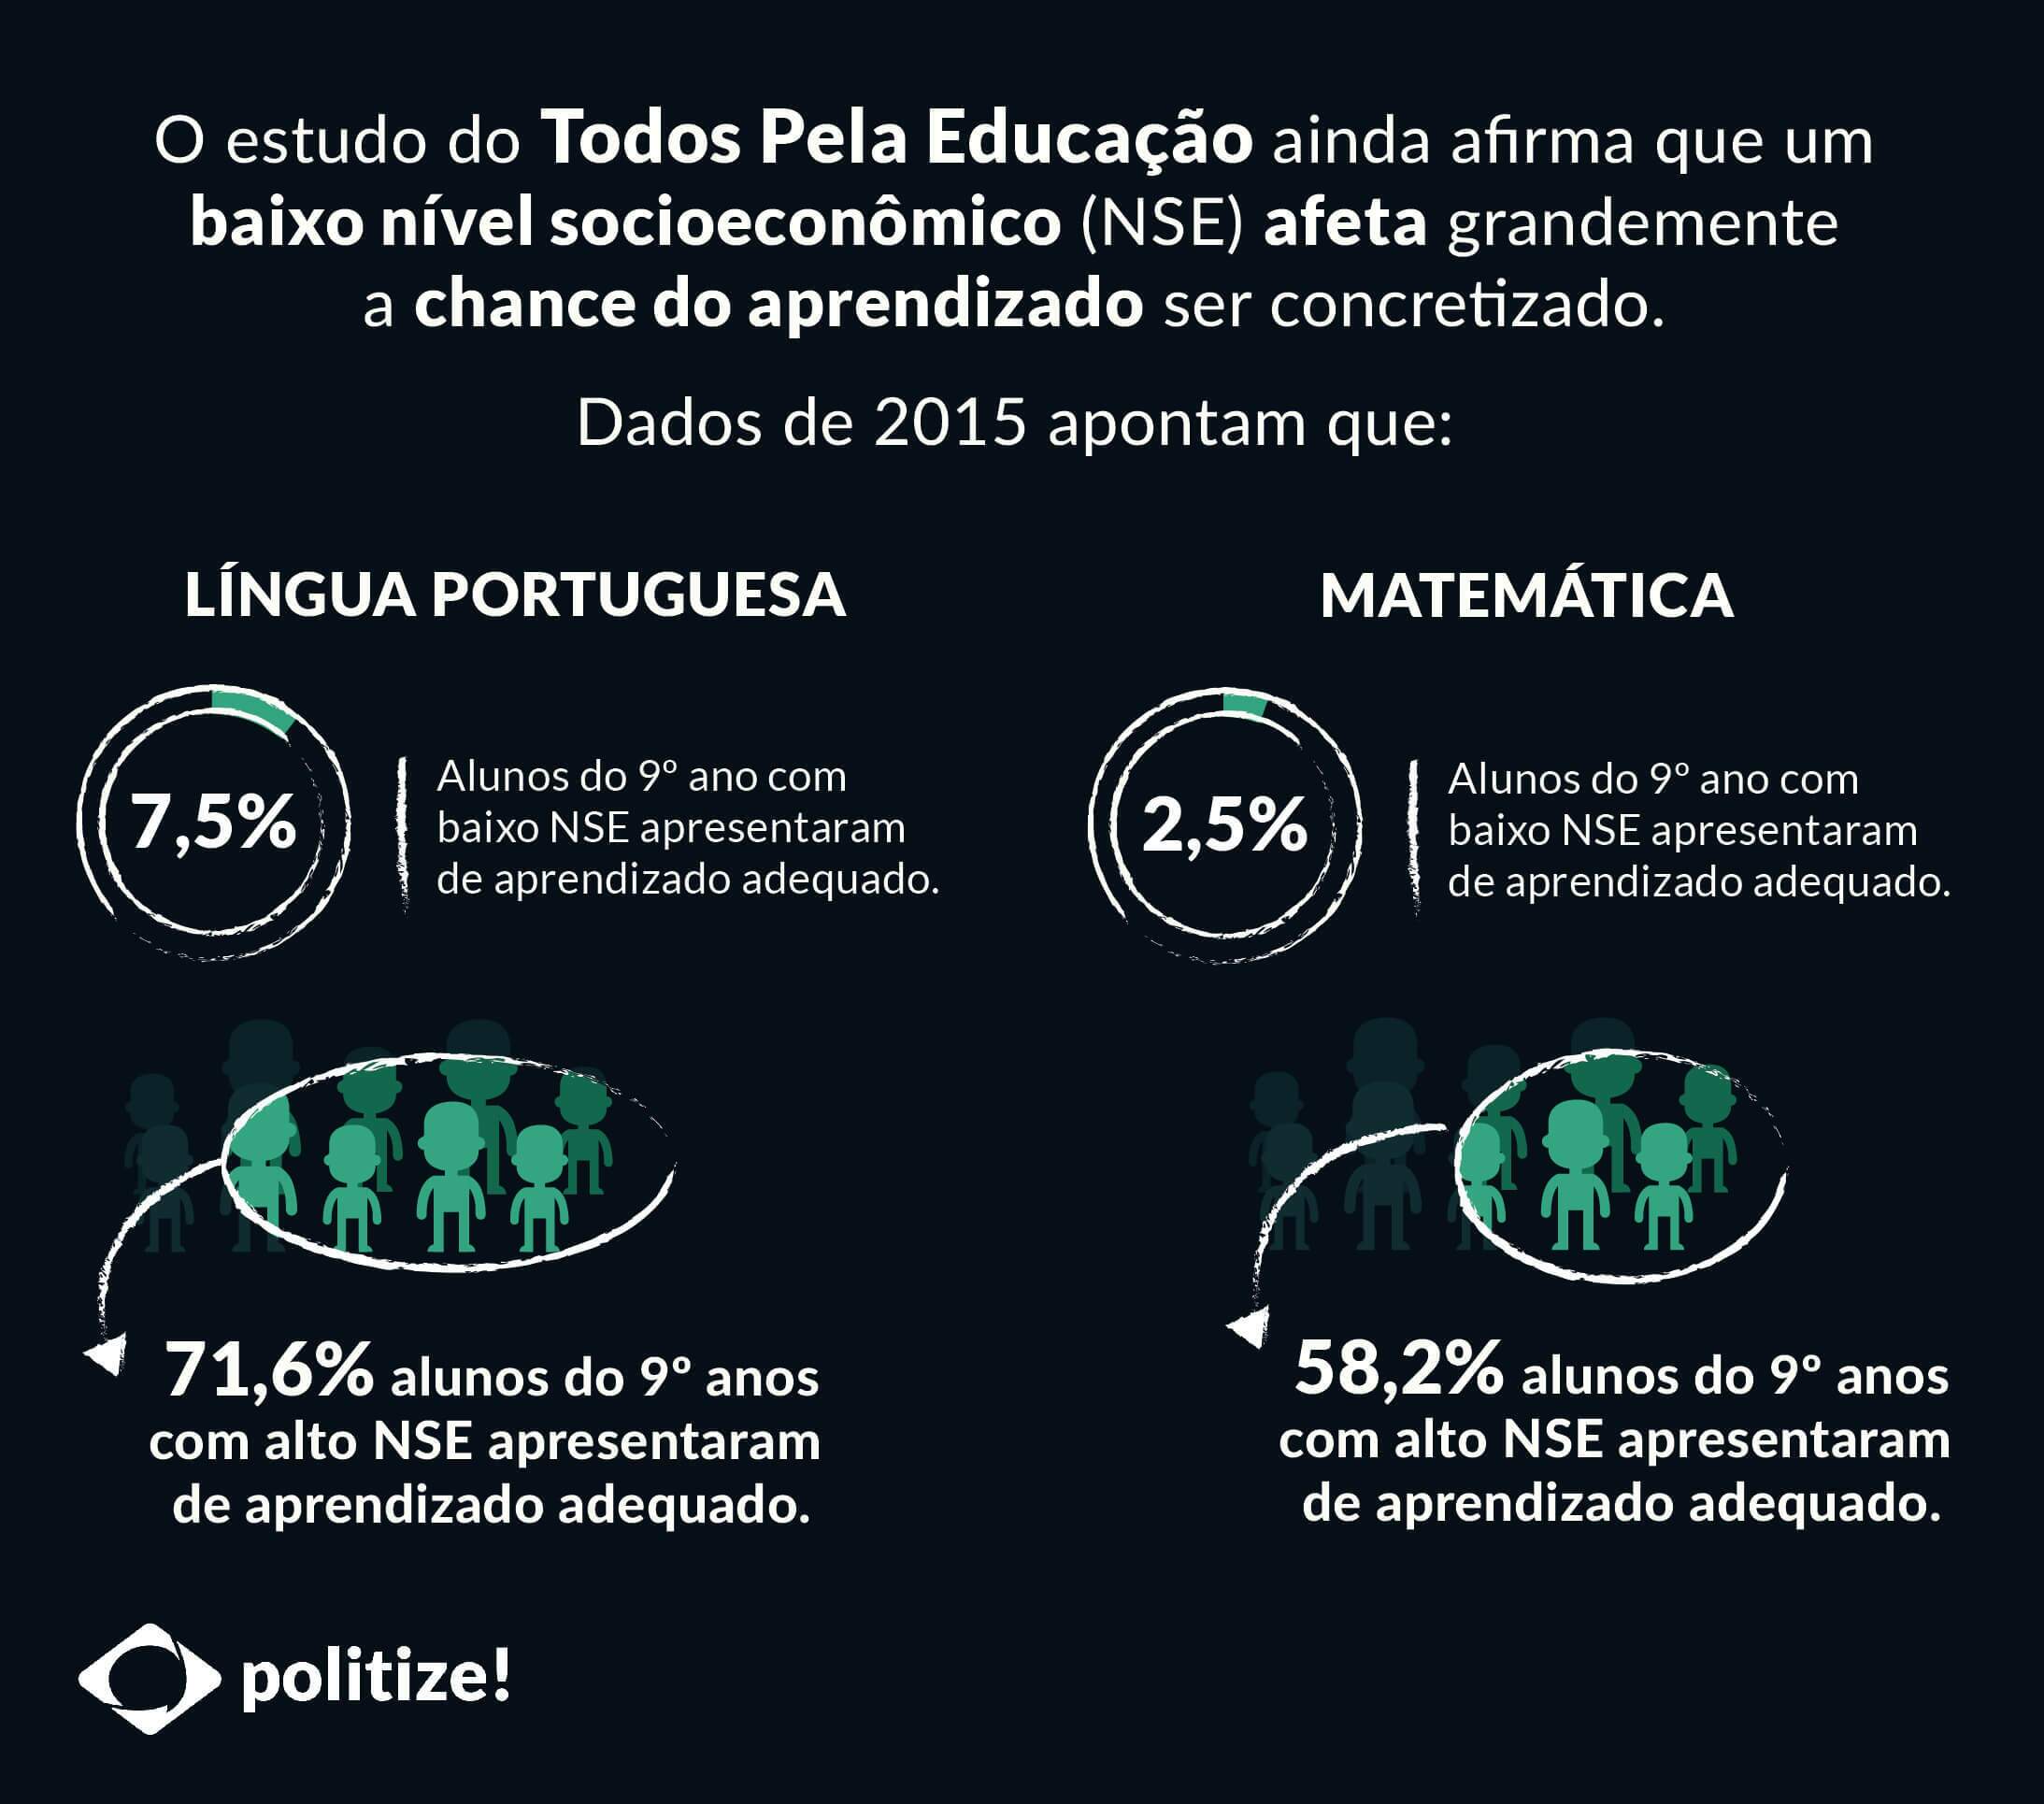 educação brasileira desafios